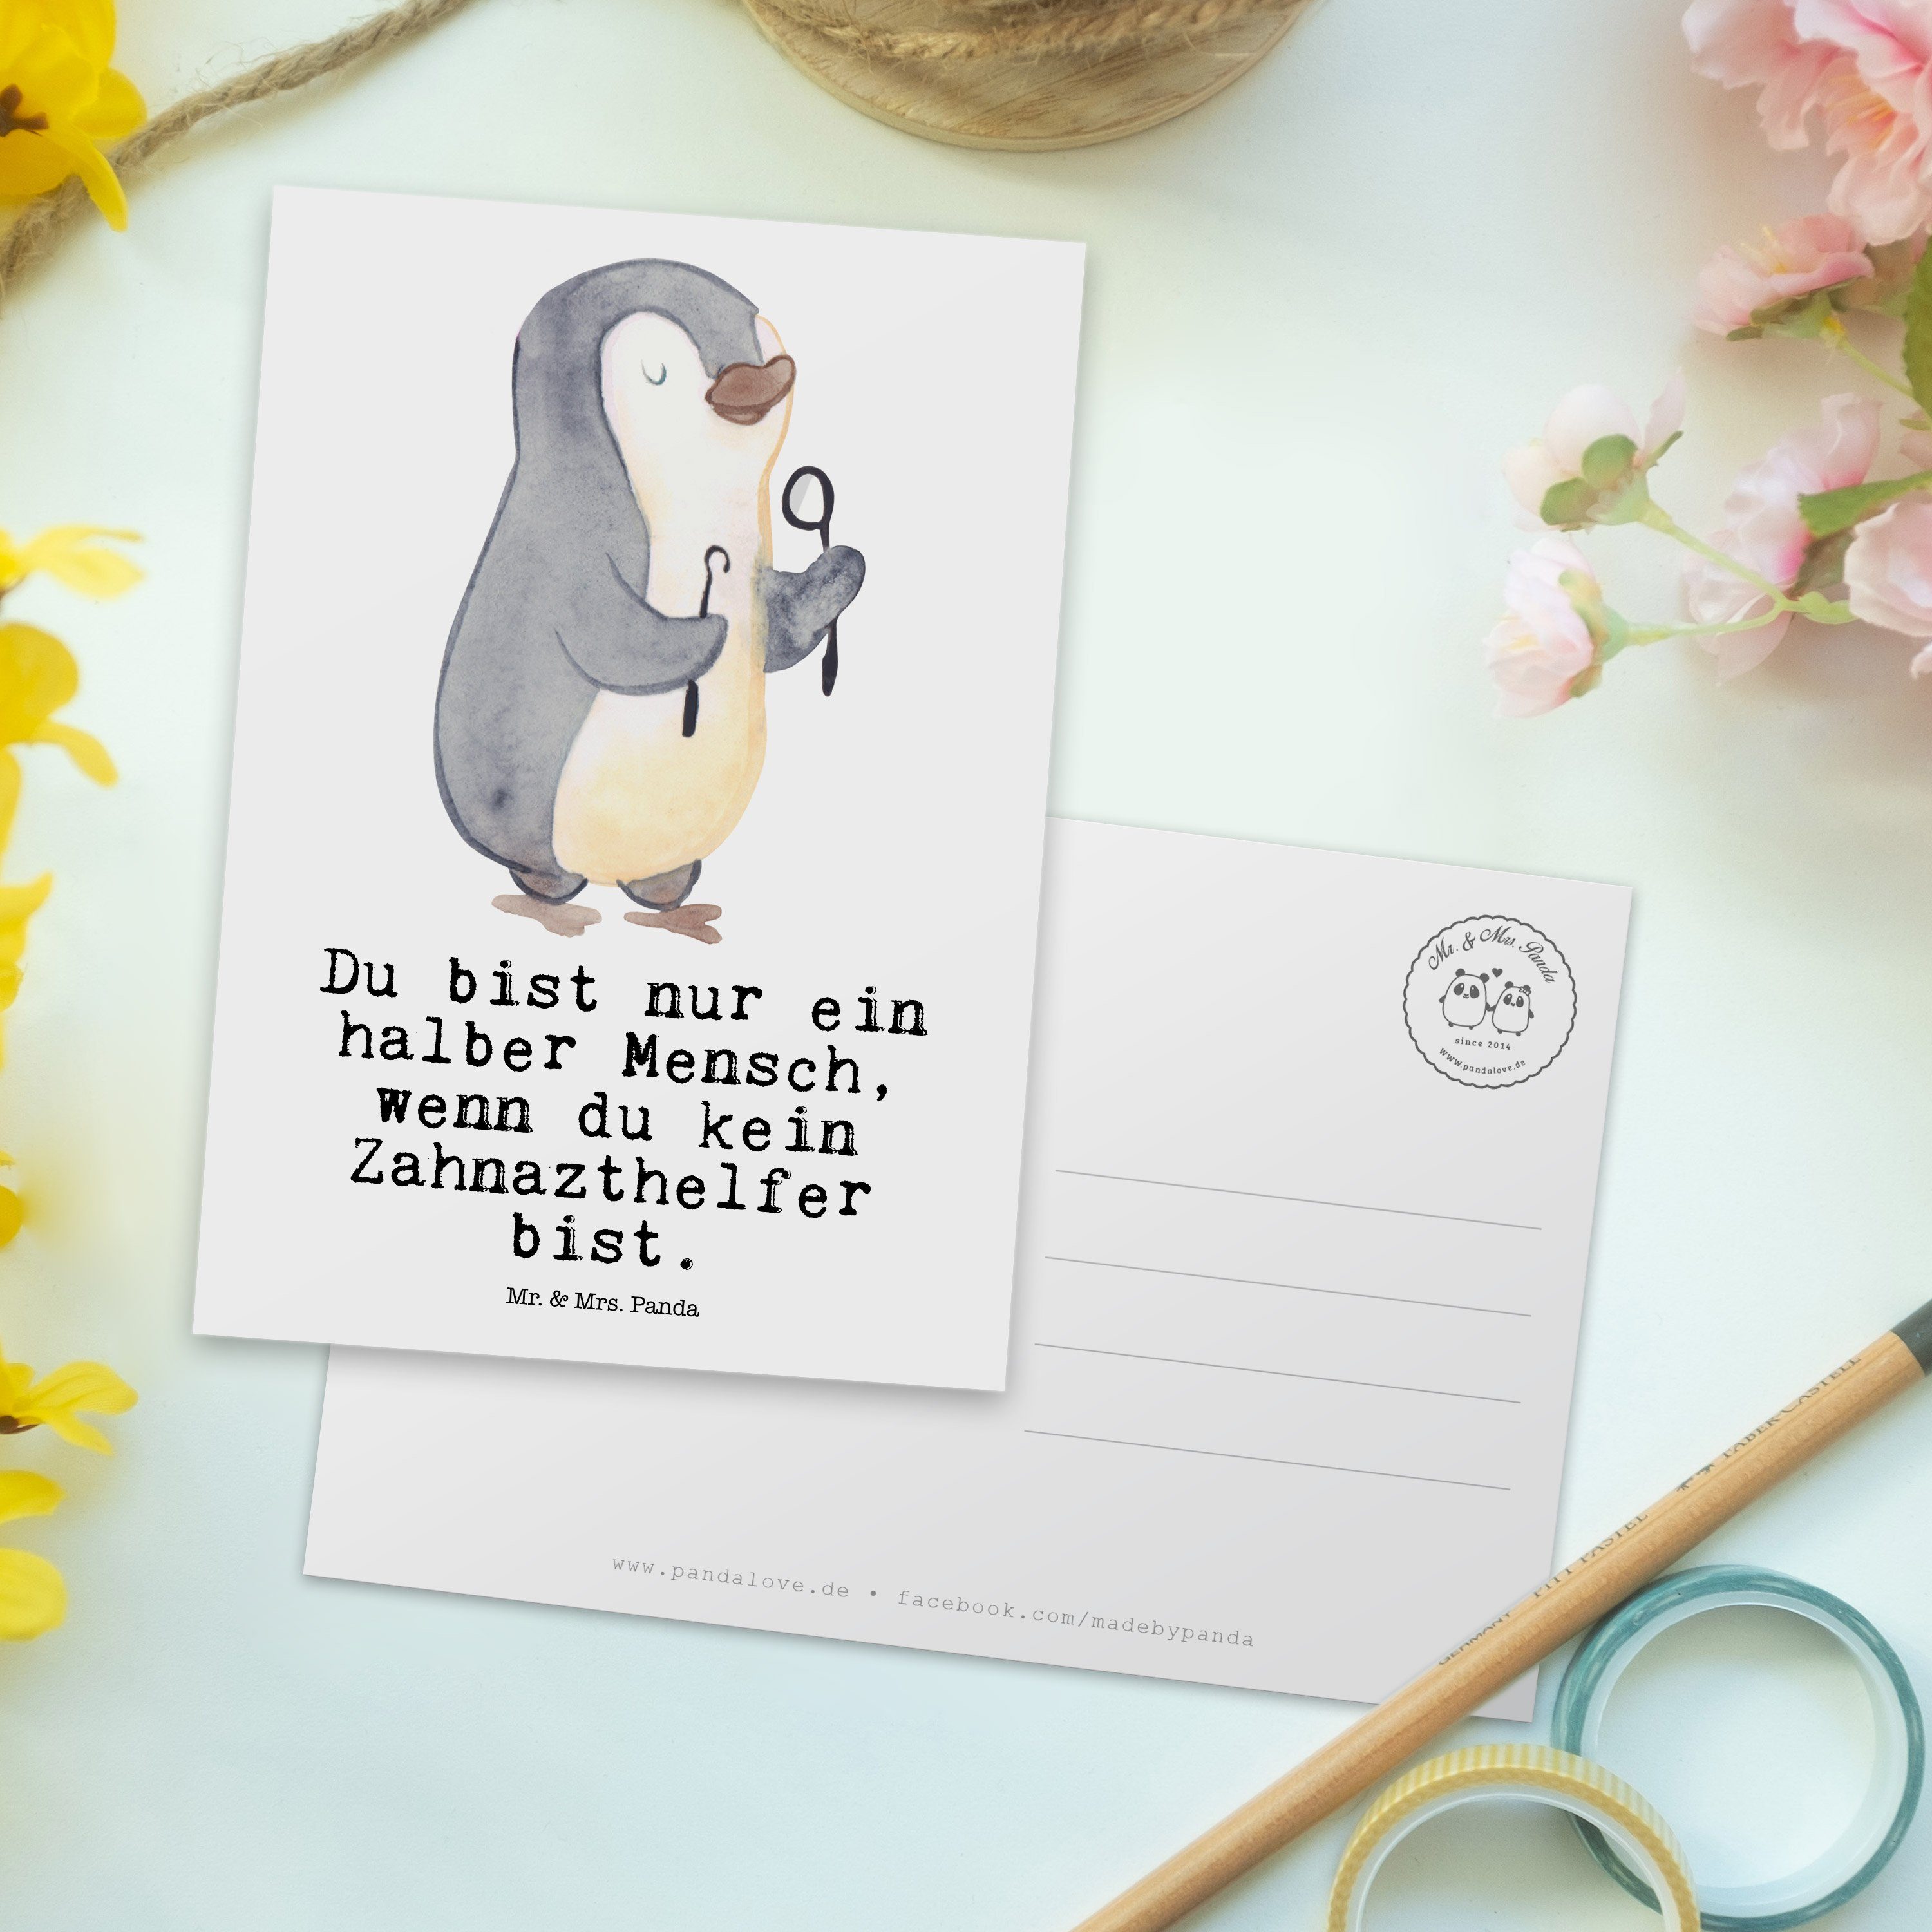 mit Herz Mrs. Mr. Schenken, Zahnarzthelfer & Geschenk, Weiß Postkarte Panda - Geburtstagskarte -